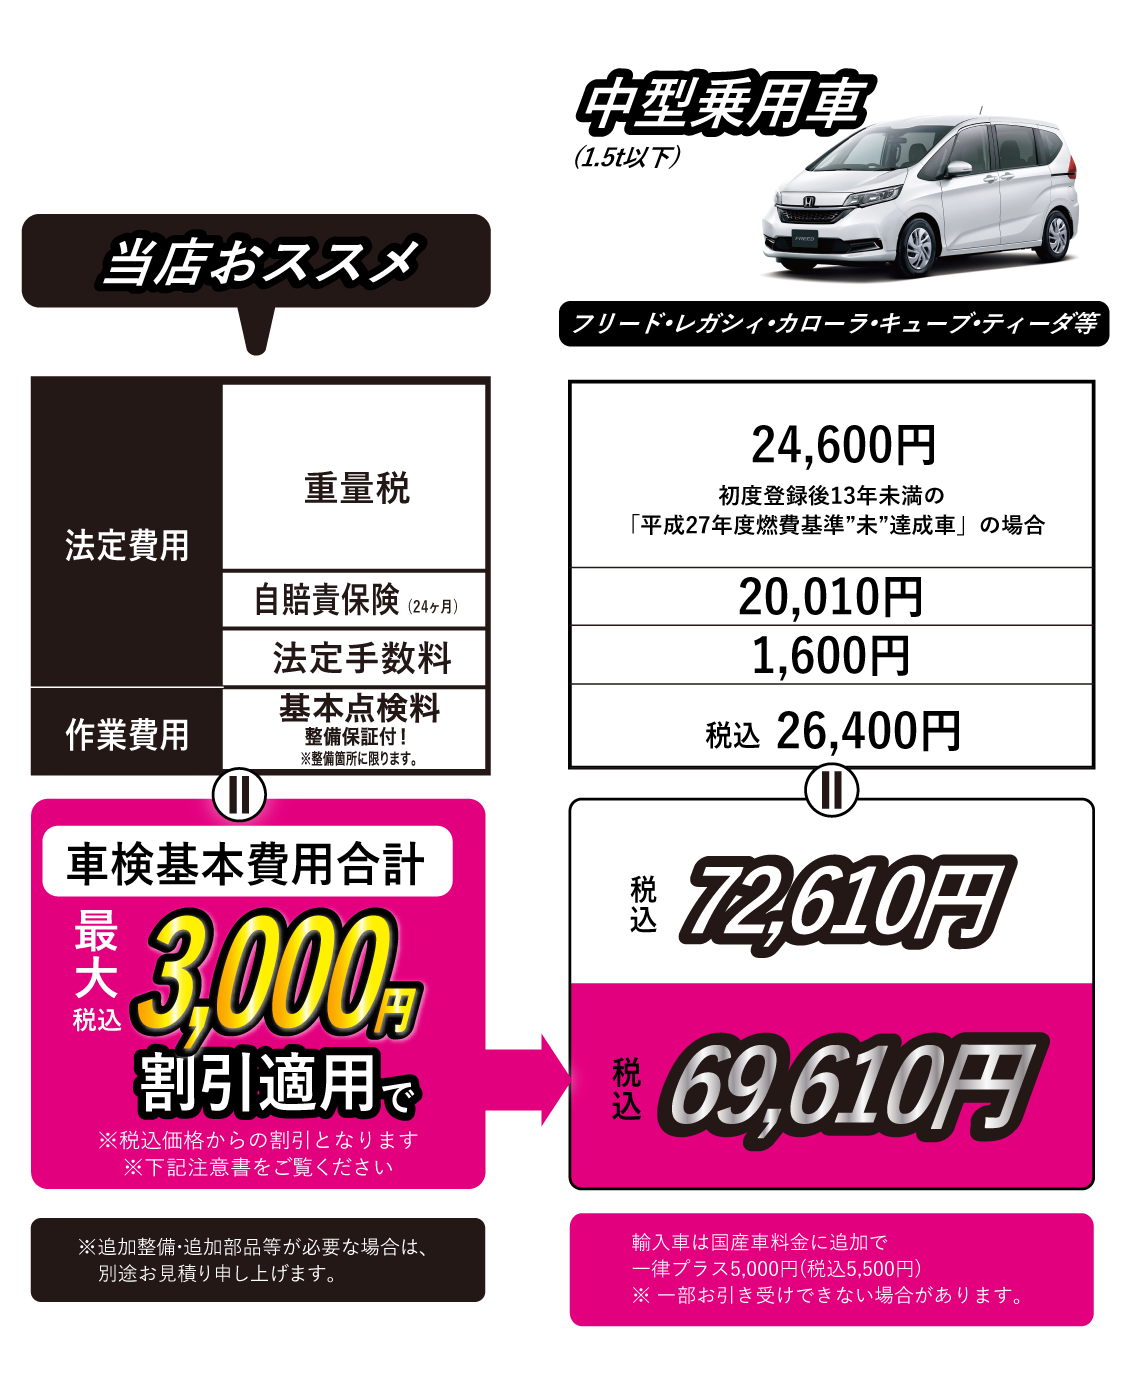 中型乗用車価格(1.5t以下)